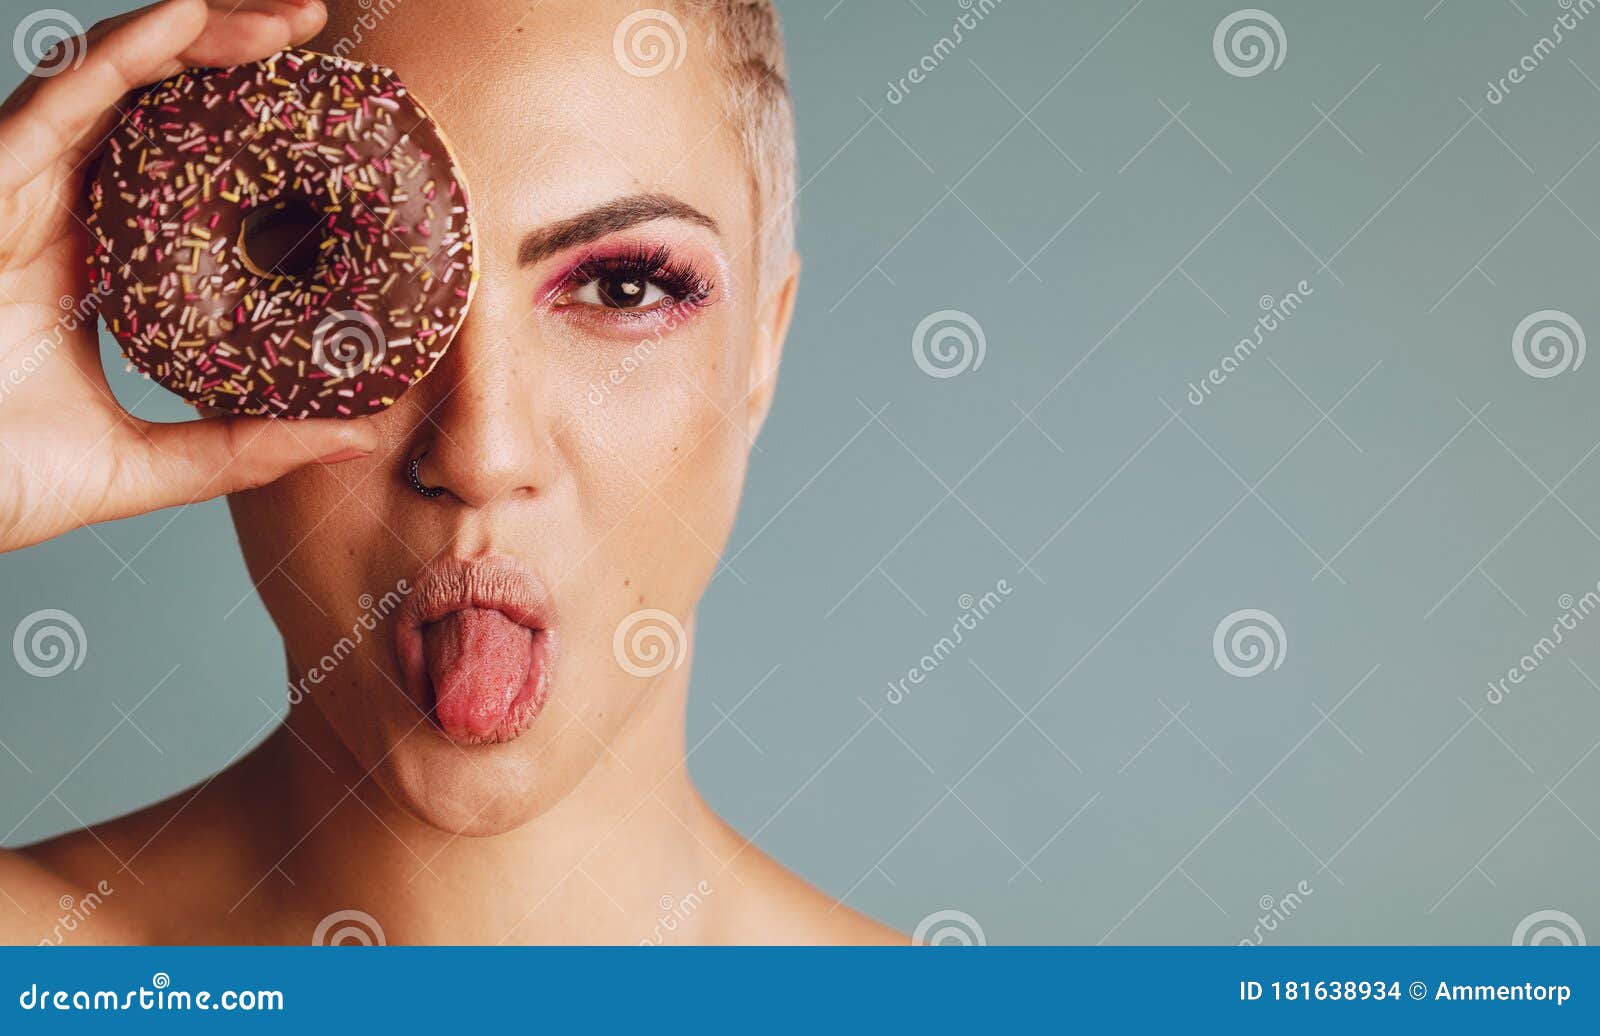 女性显示的舌头 库存照片. 图片 包括有 摄影, 幽默, 外出, 陈列, 人员, 生命力, 人们, 舌头 - 59991616